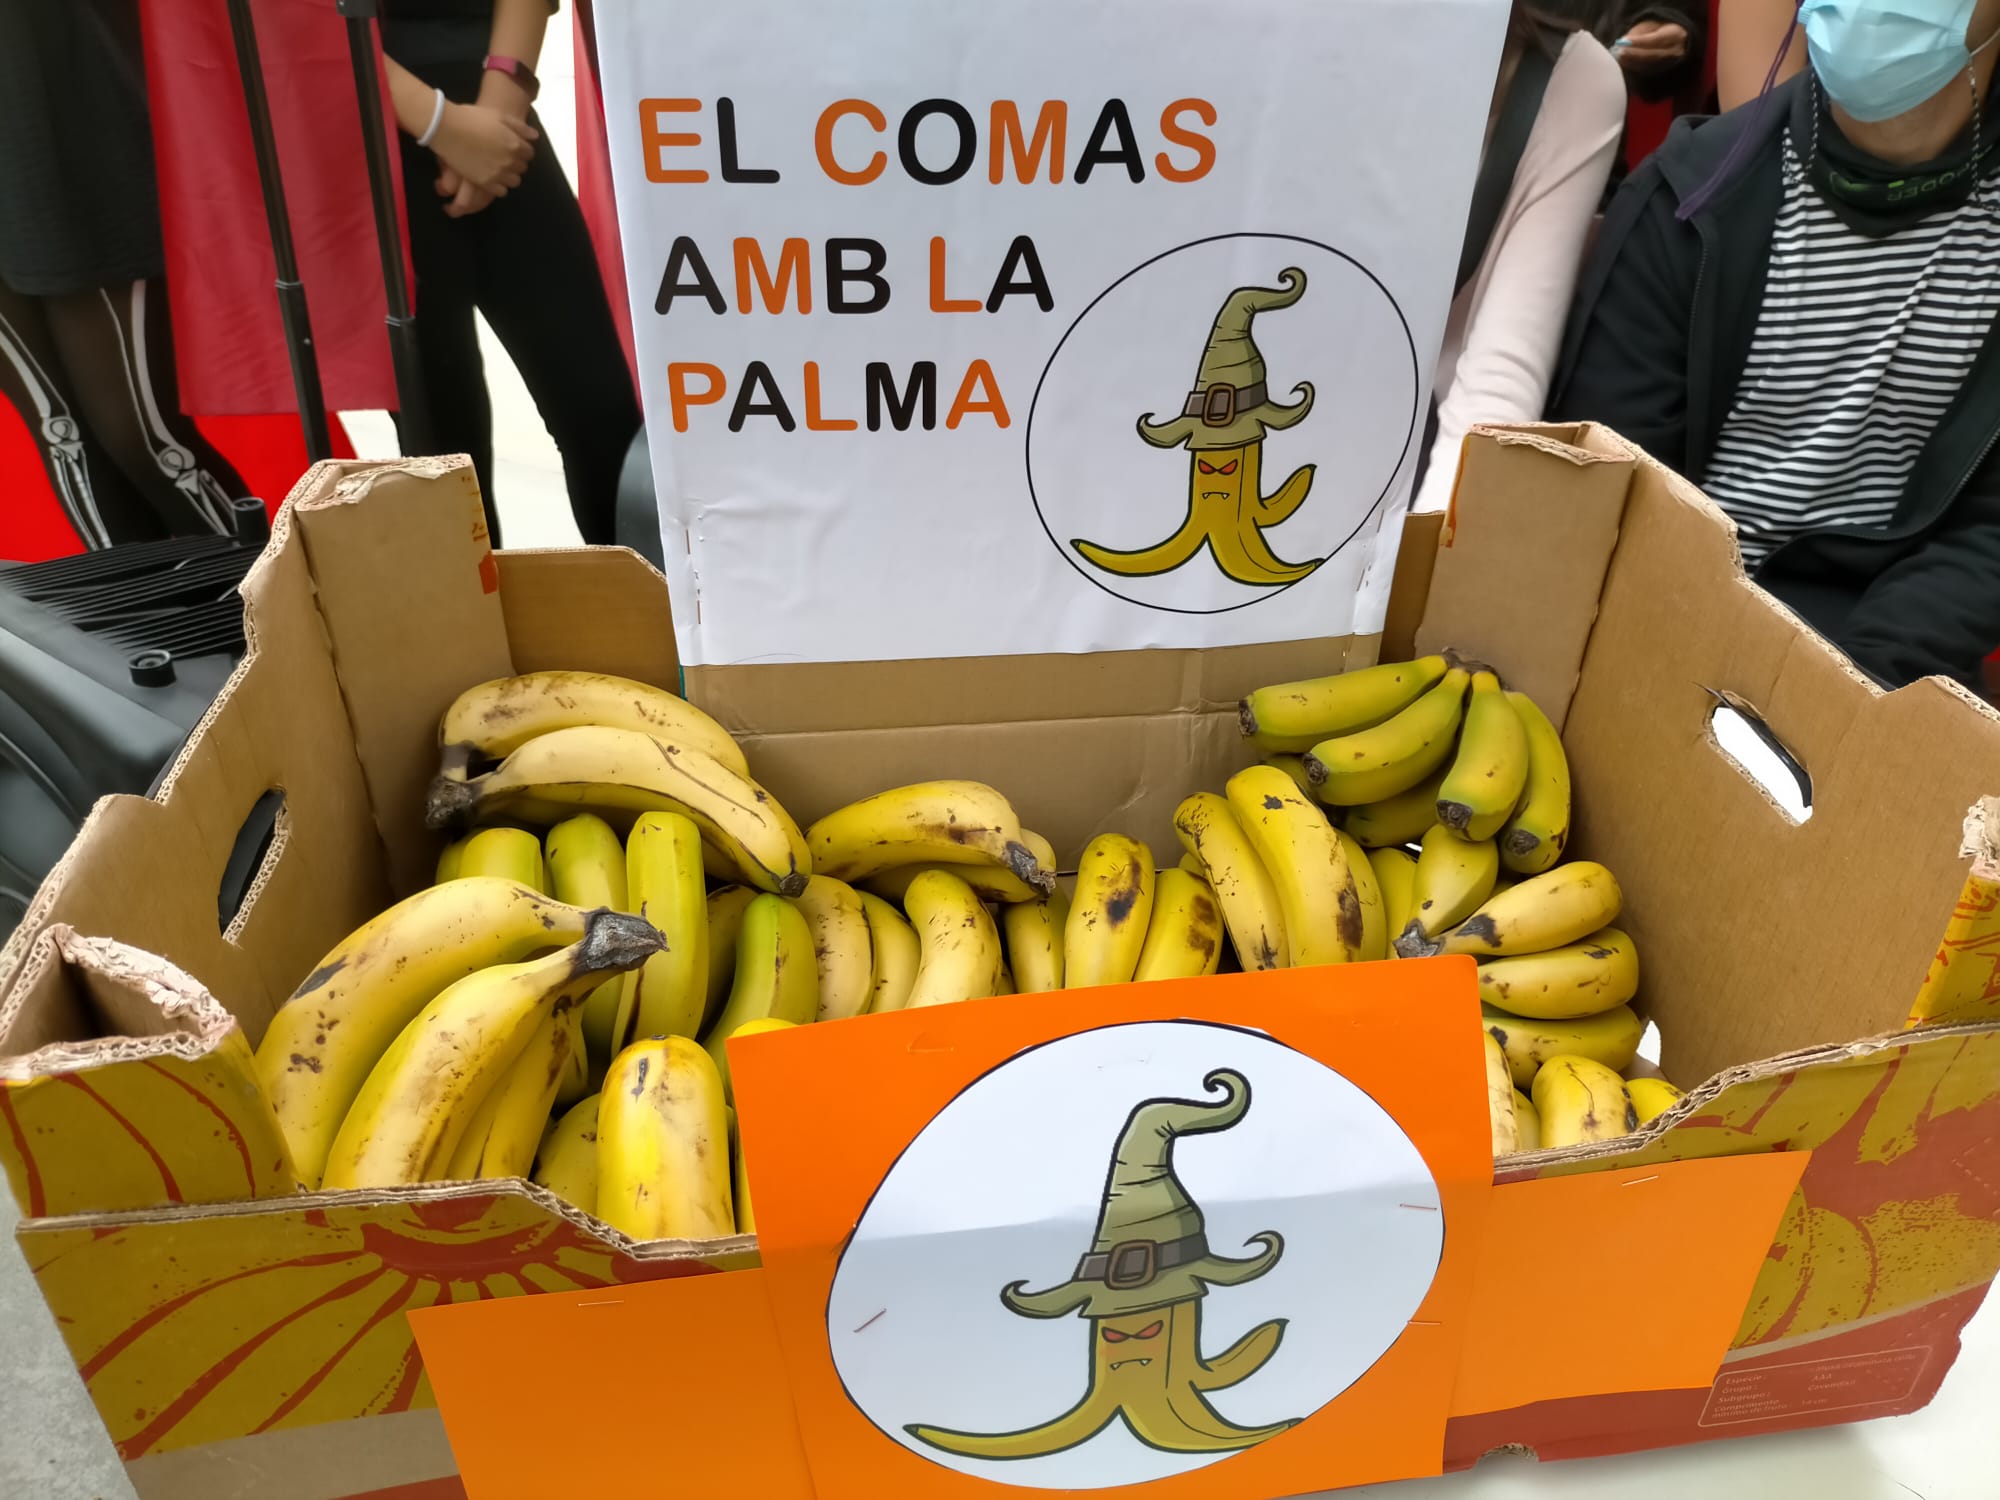 EL COMAS AMB LA PALMA